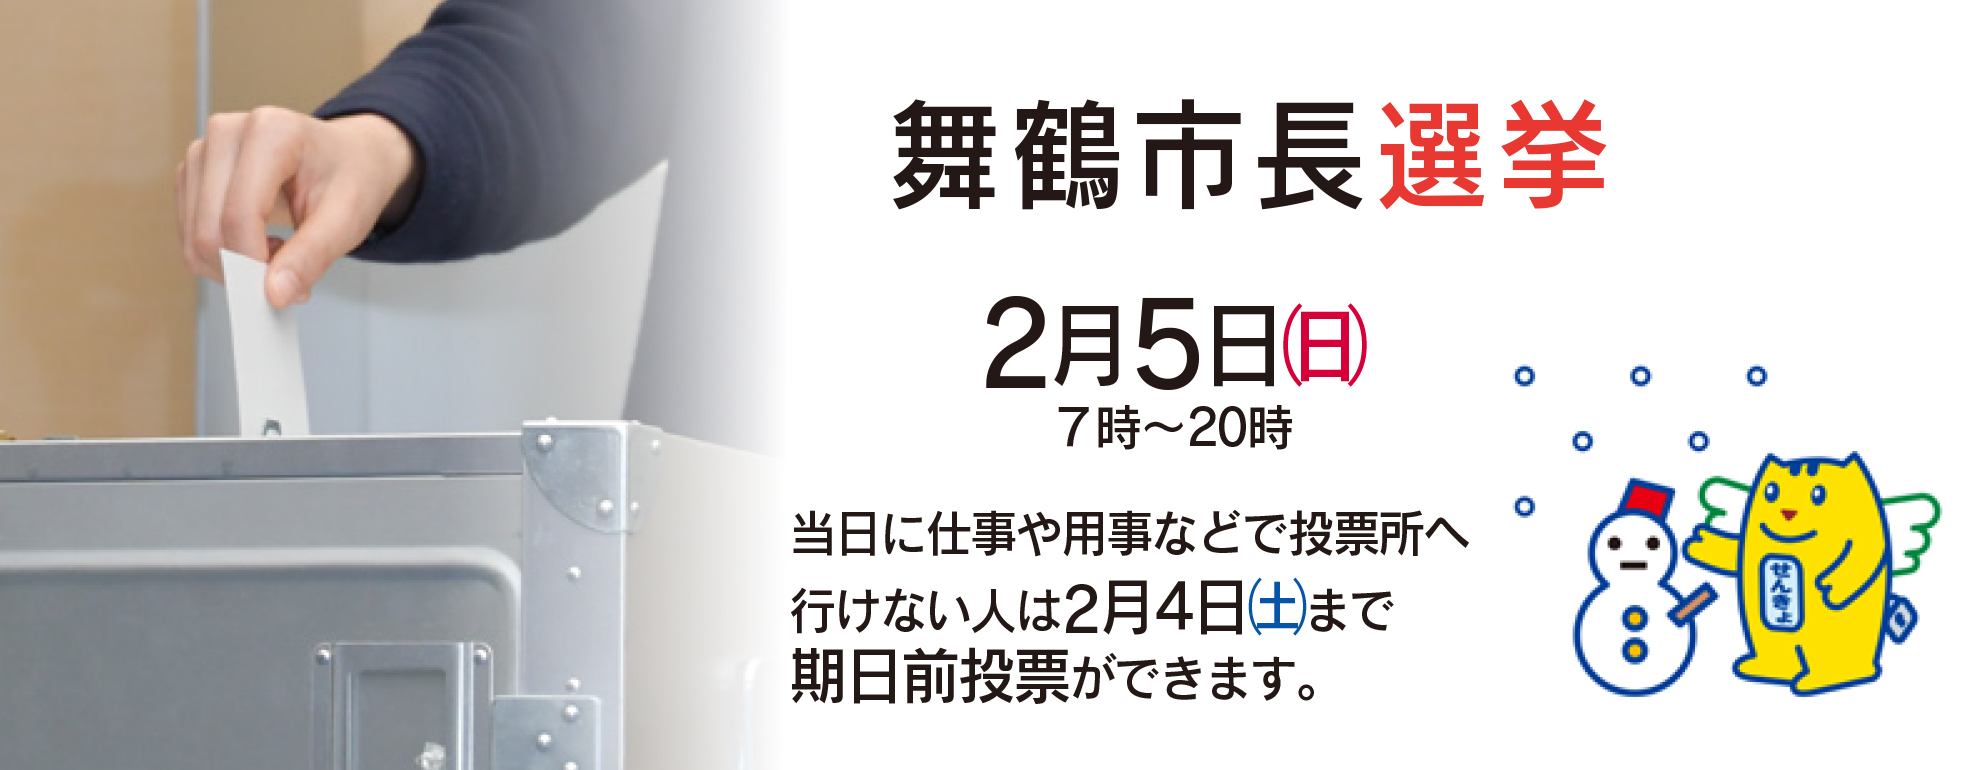 舞鶴市長選挙